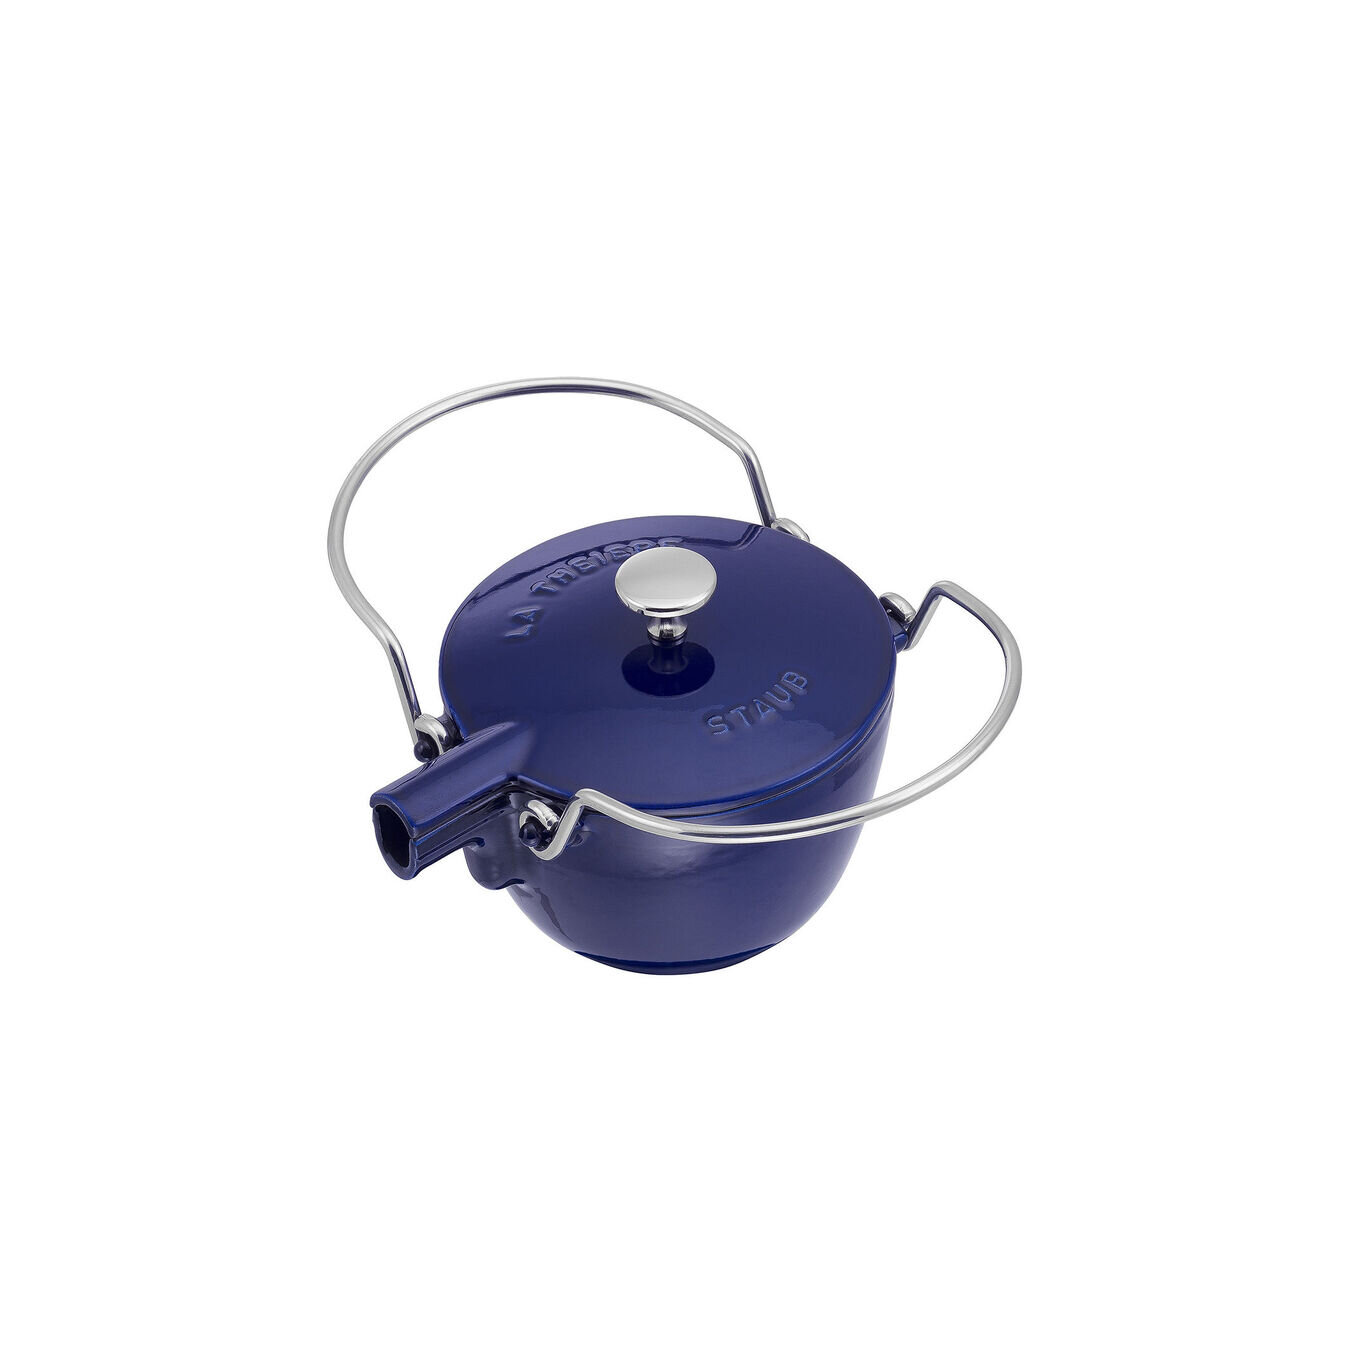 https://assets.wfcdn.com/im/68378011/compr-r85/1930/193029650/staub-cast-iron-122-qt-round-tea-kettle.jpg